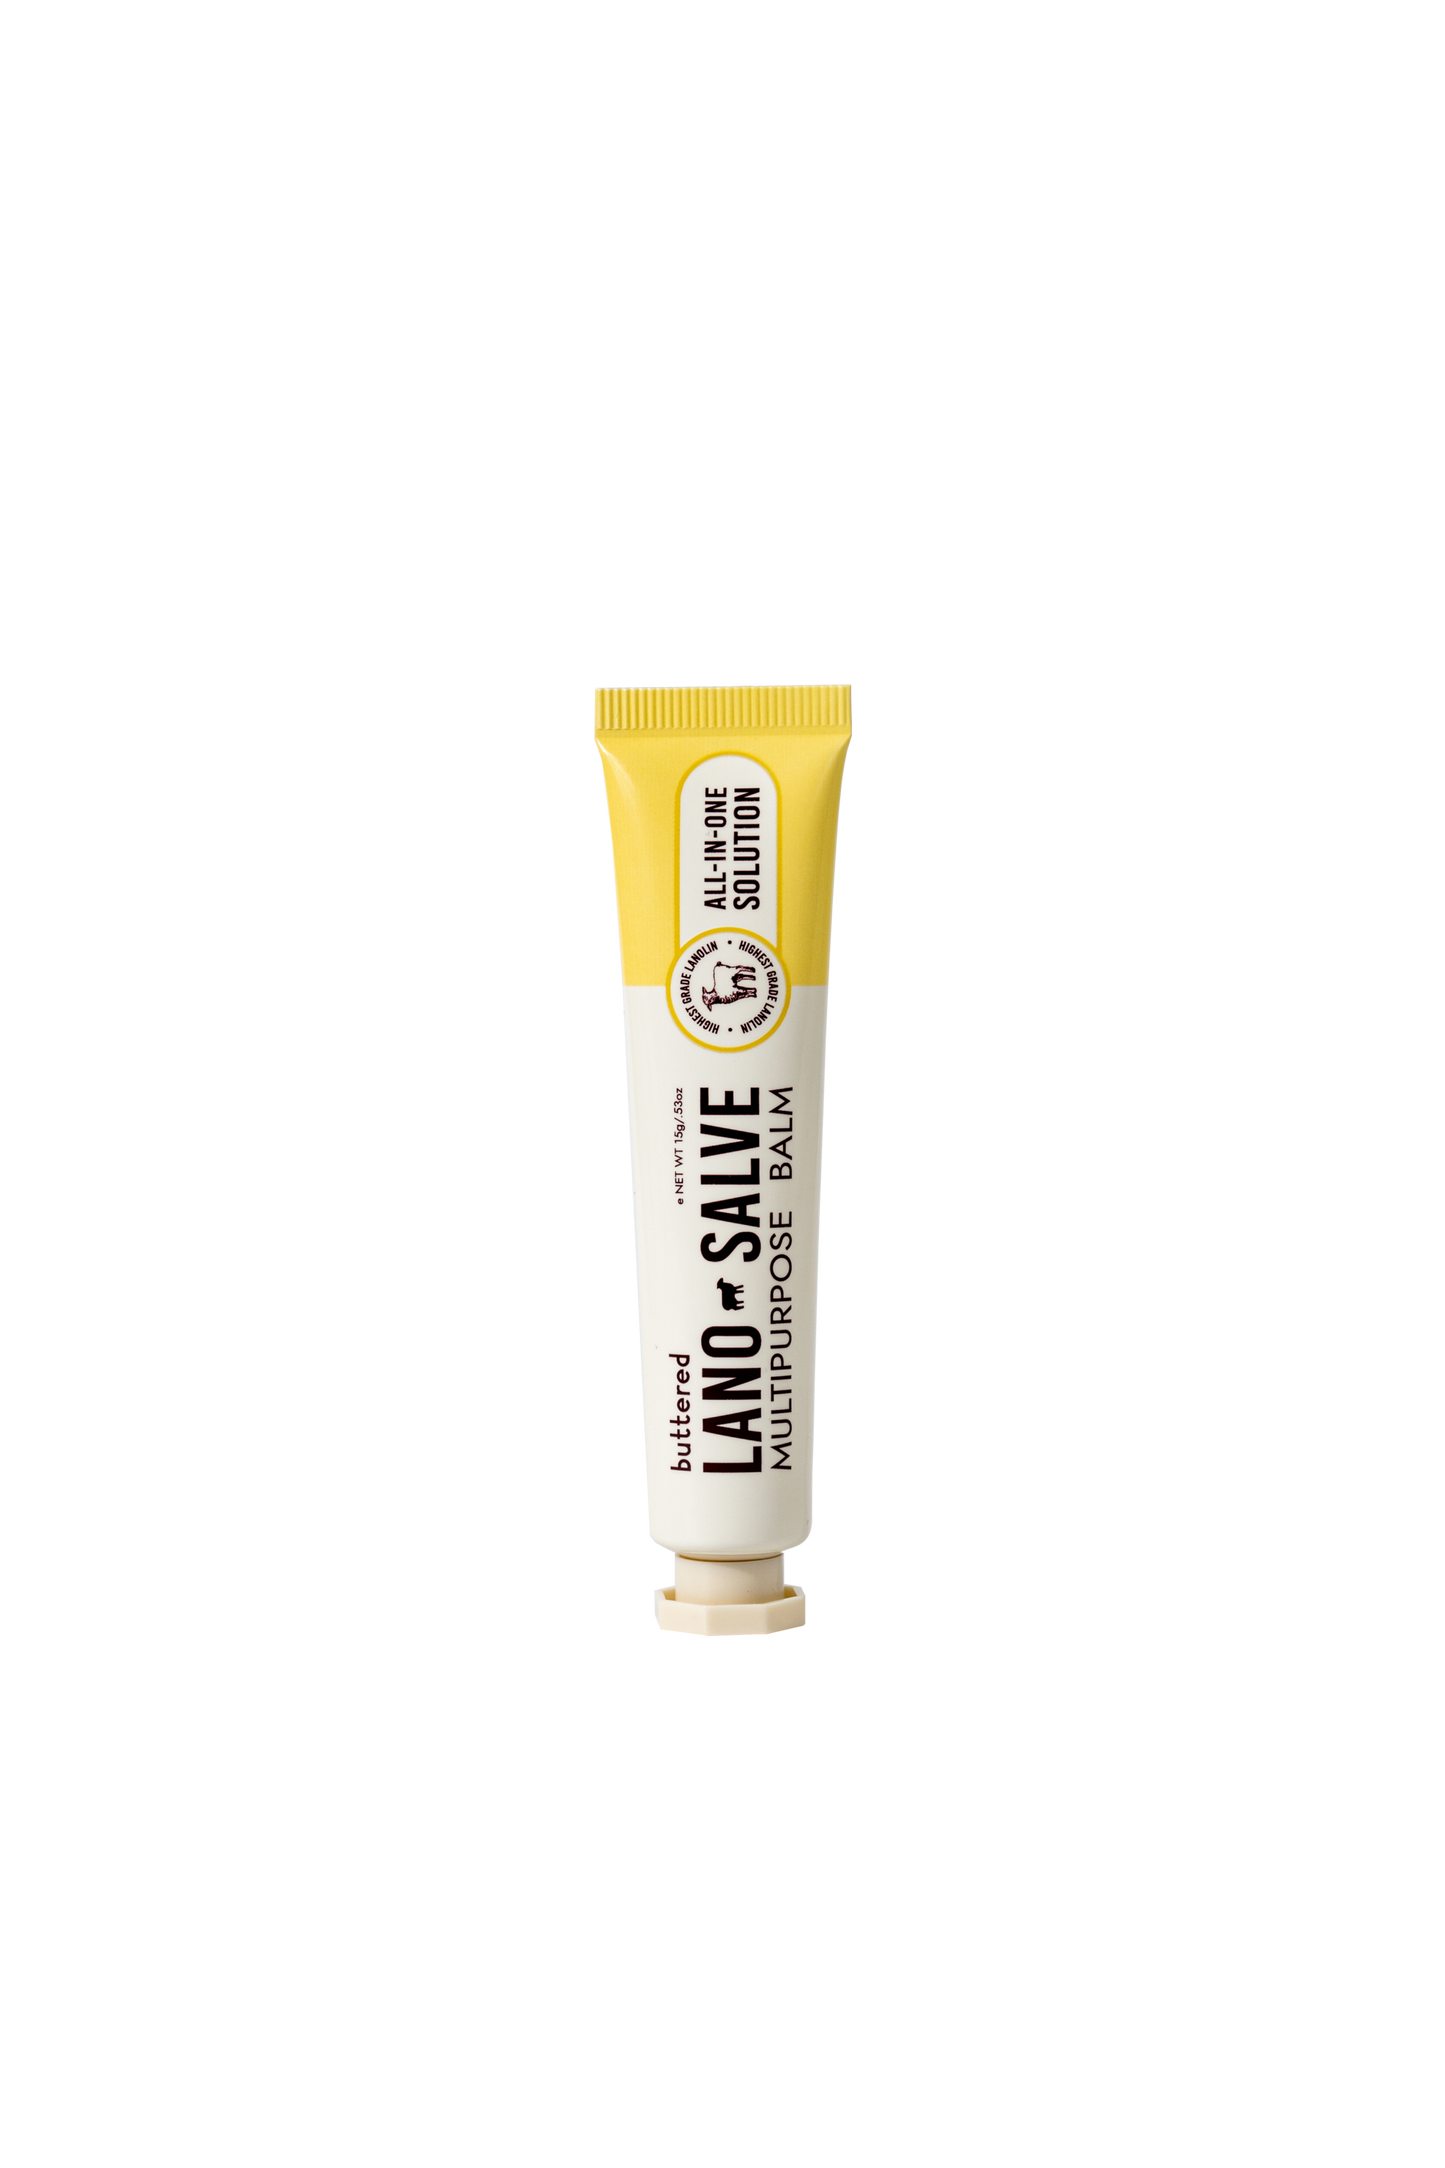 Buttered - Lanosalve Multipurpose Balm (Original) / Salep Multifungsi / Solusi Kulit Kering Pecah Pecah / Salep Lanolin